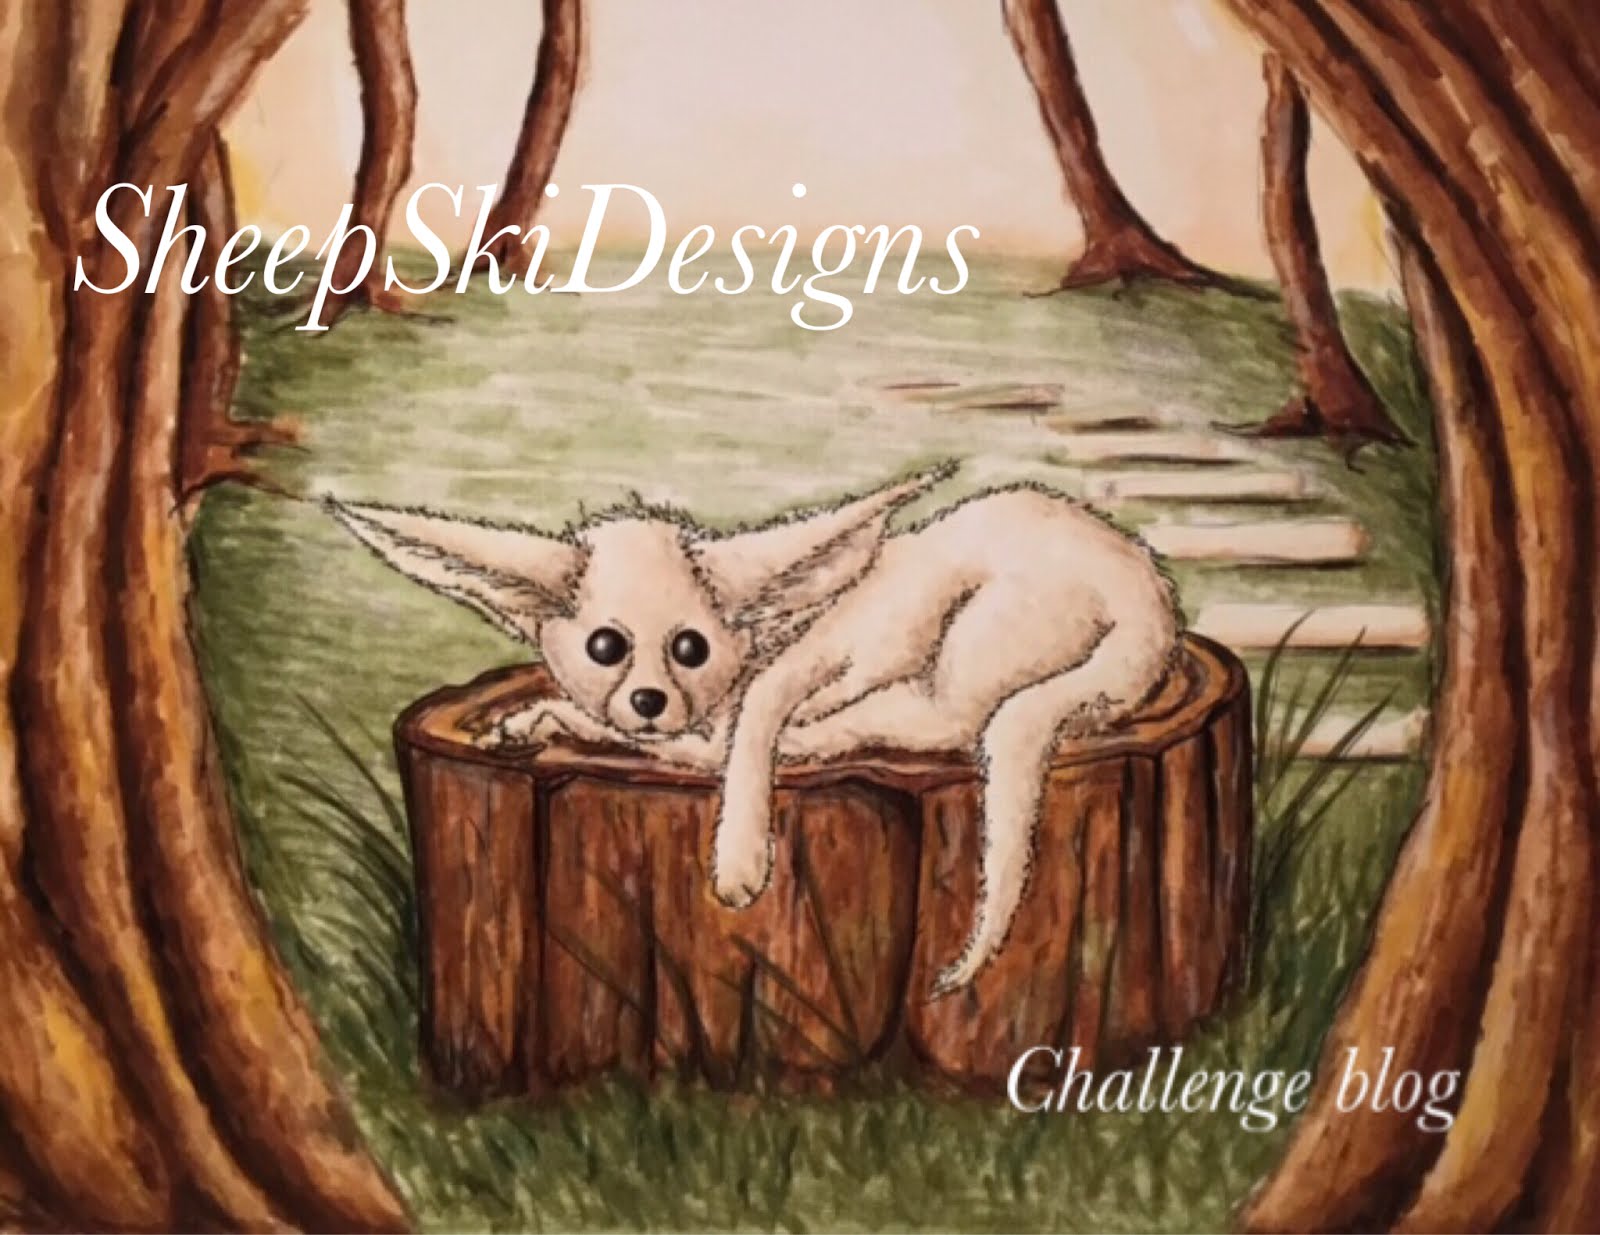 SheepSki Designs Challenges